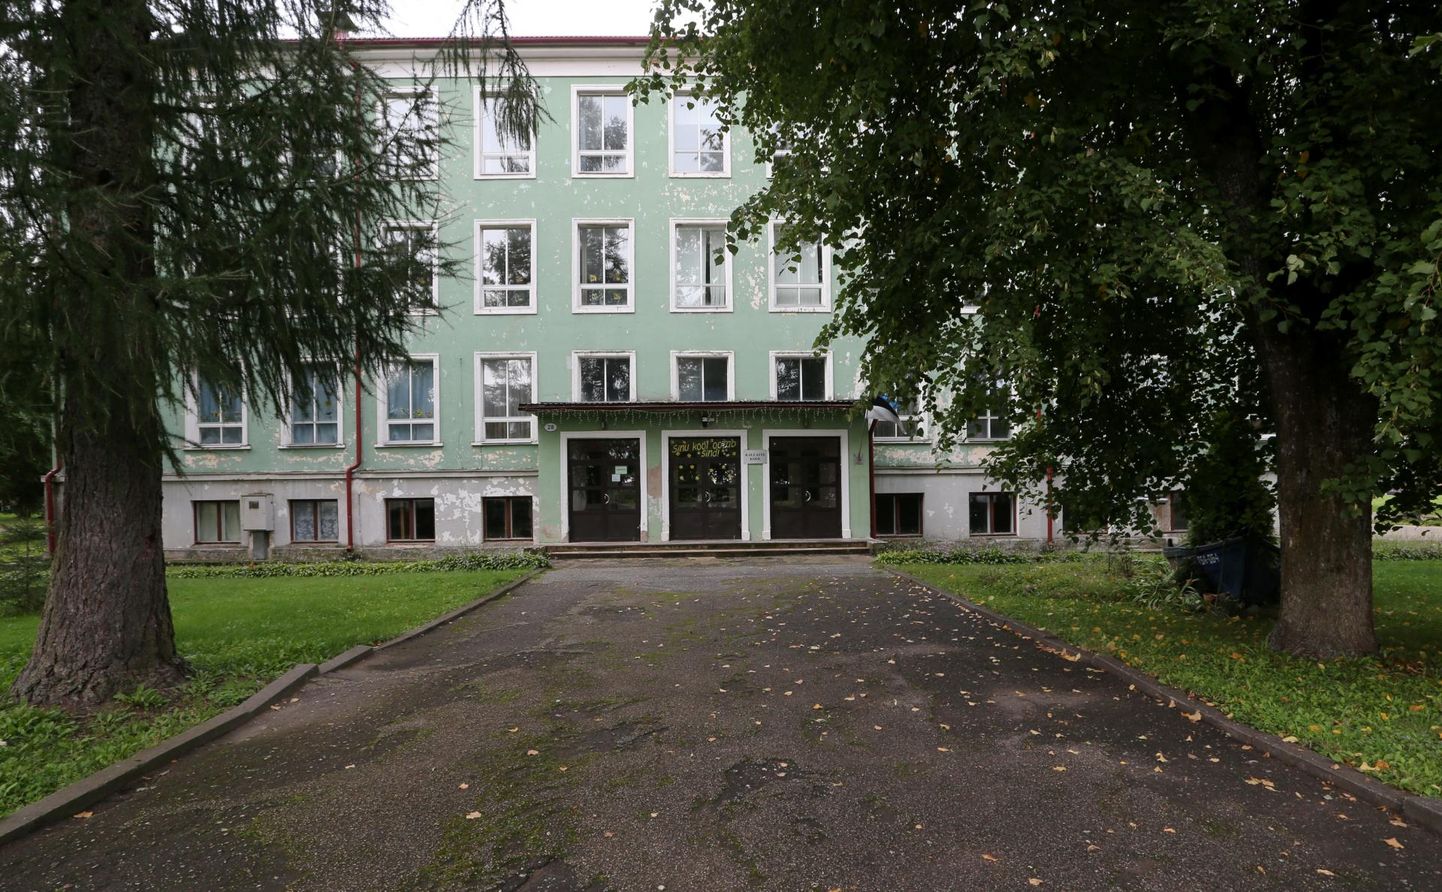 Kallaste kooli edasine saatus sõltub Peipsiääre vallavalitsuse otsusest.
 